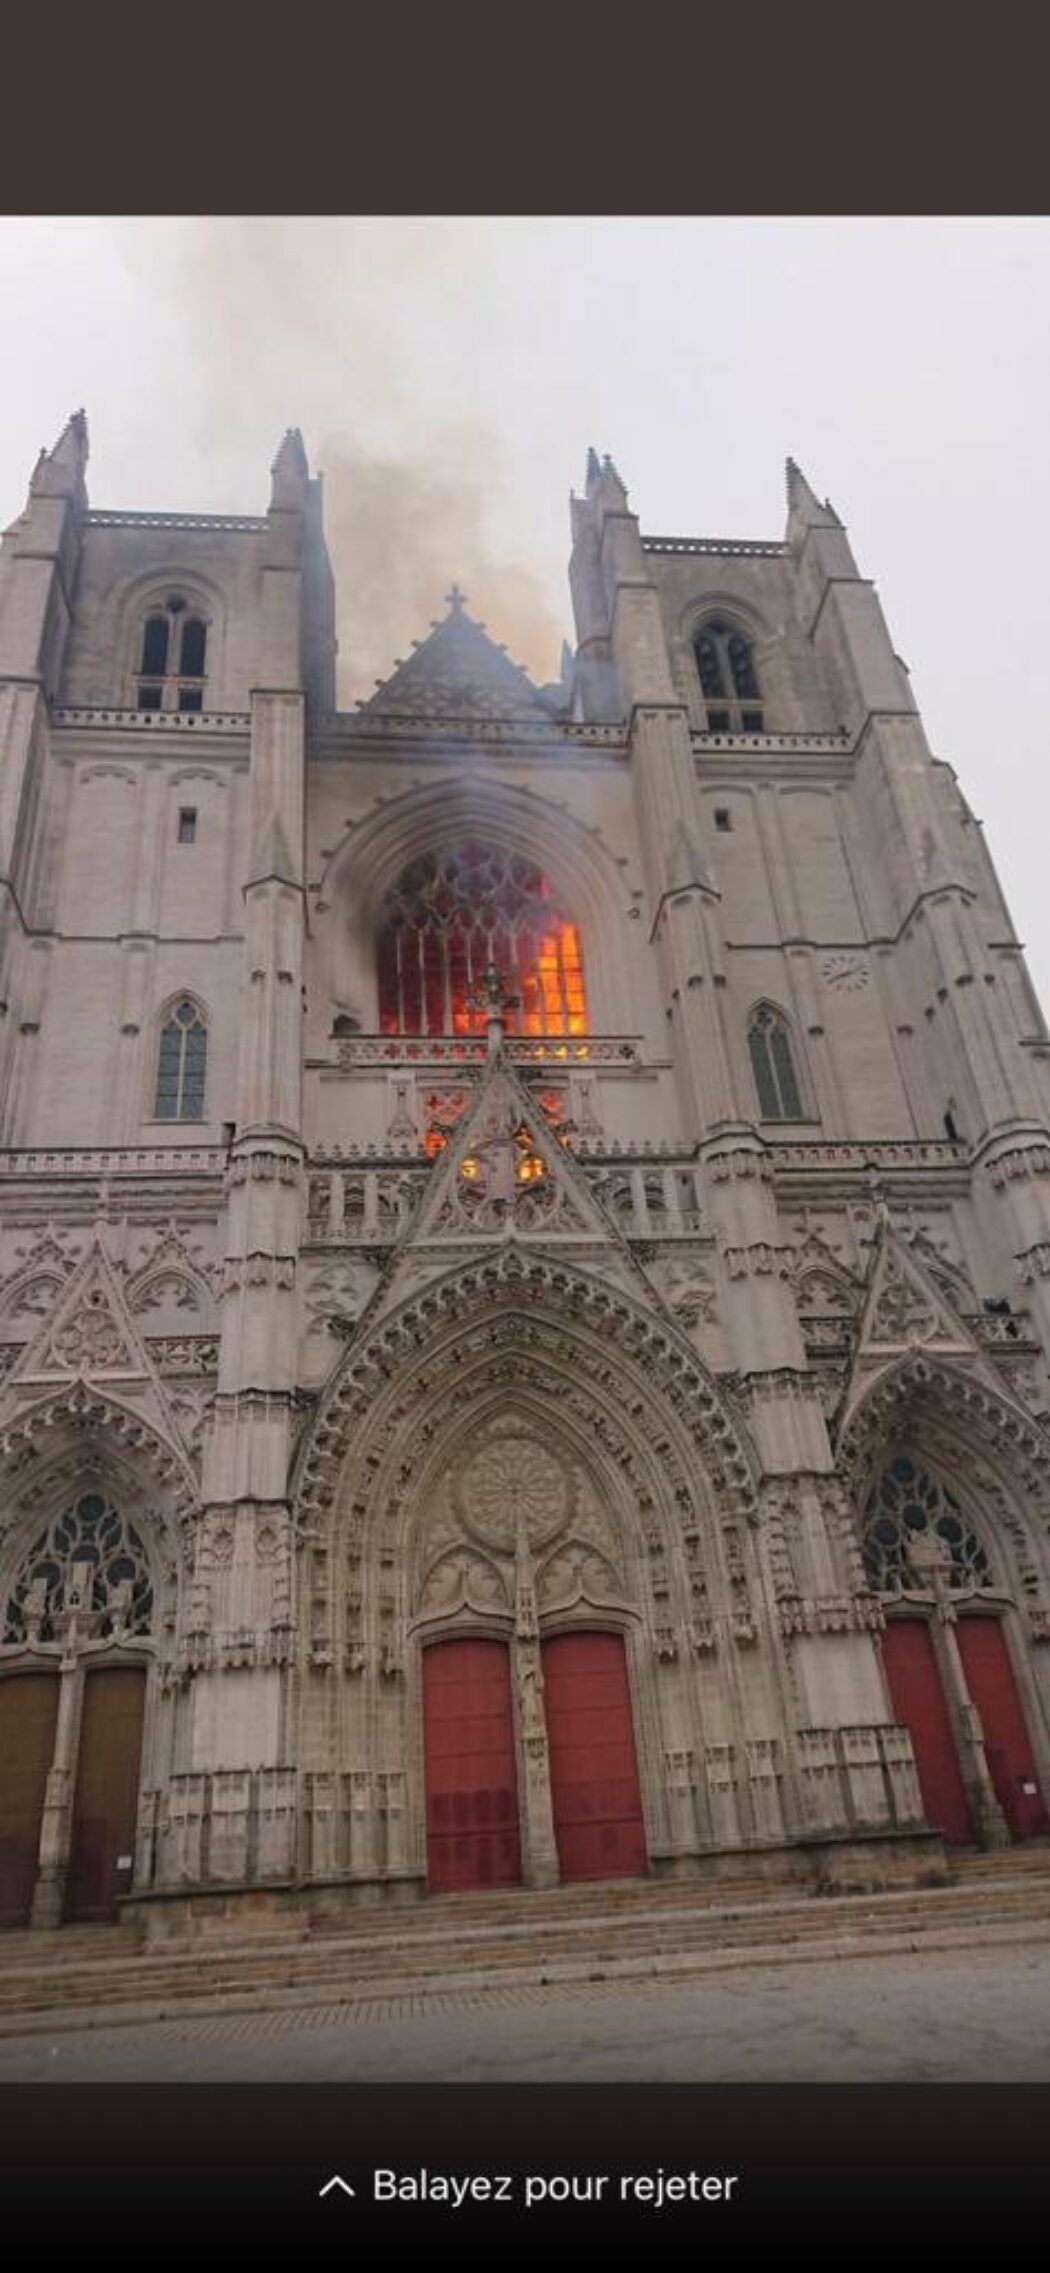 Incendie de la cathédrale de Nantes : l’immigré rwandais est passé aux aveux